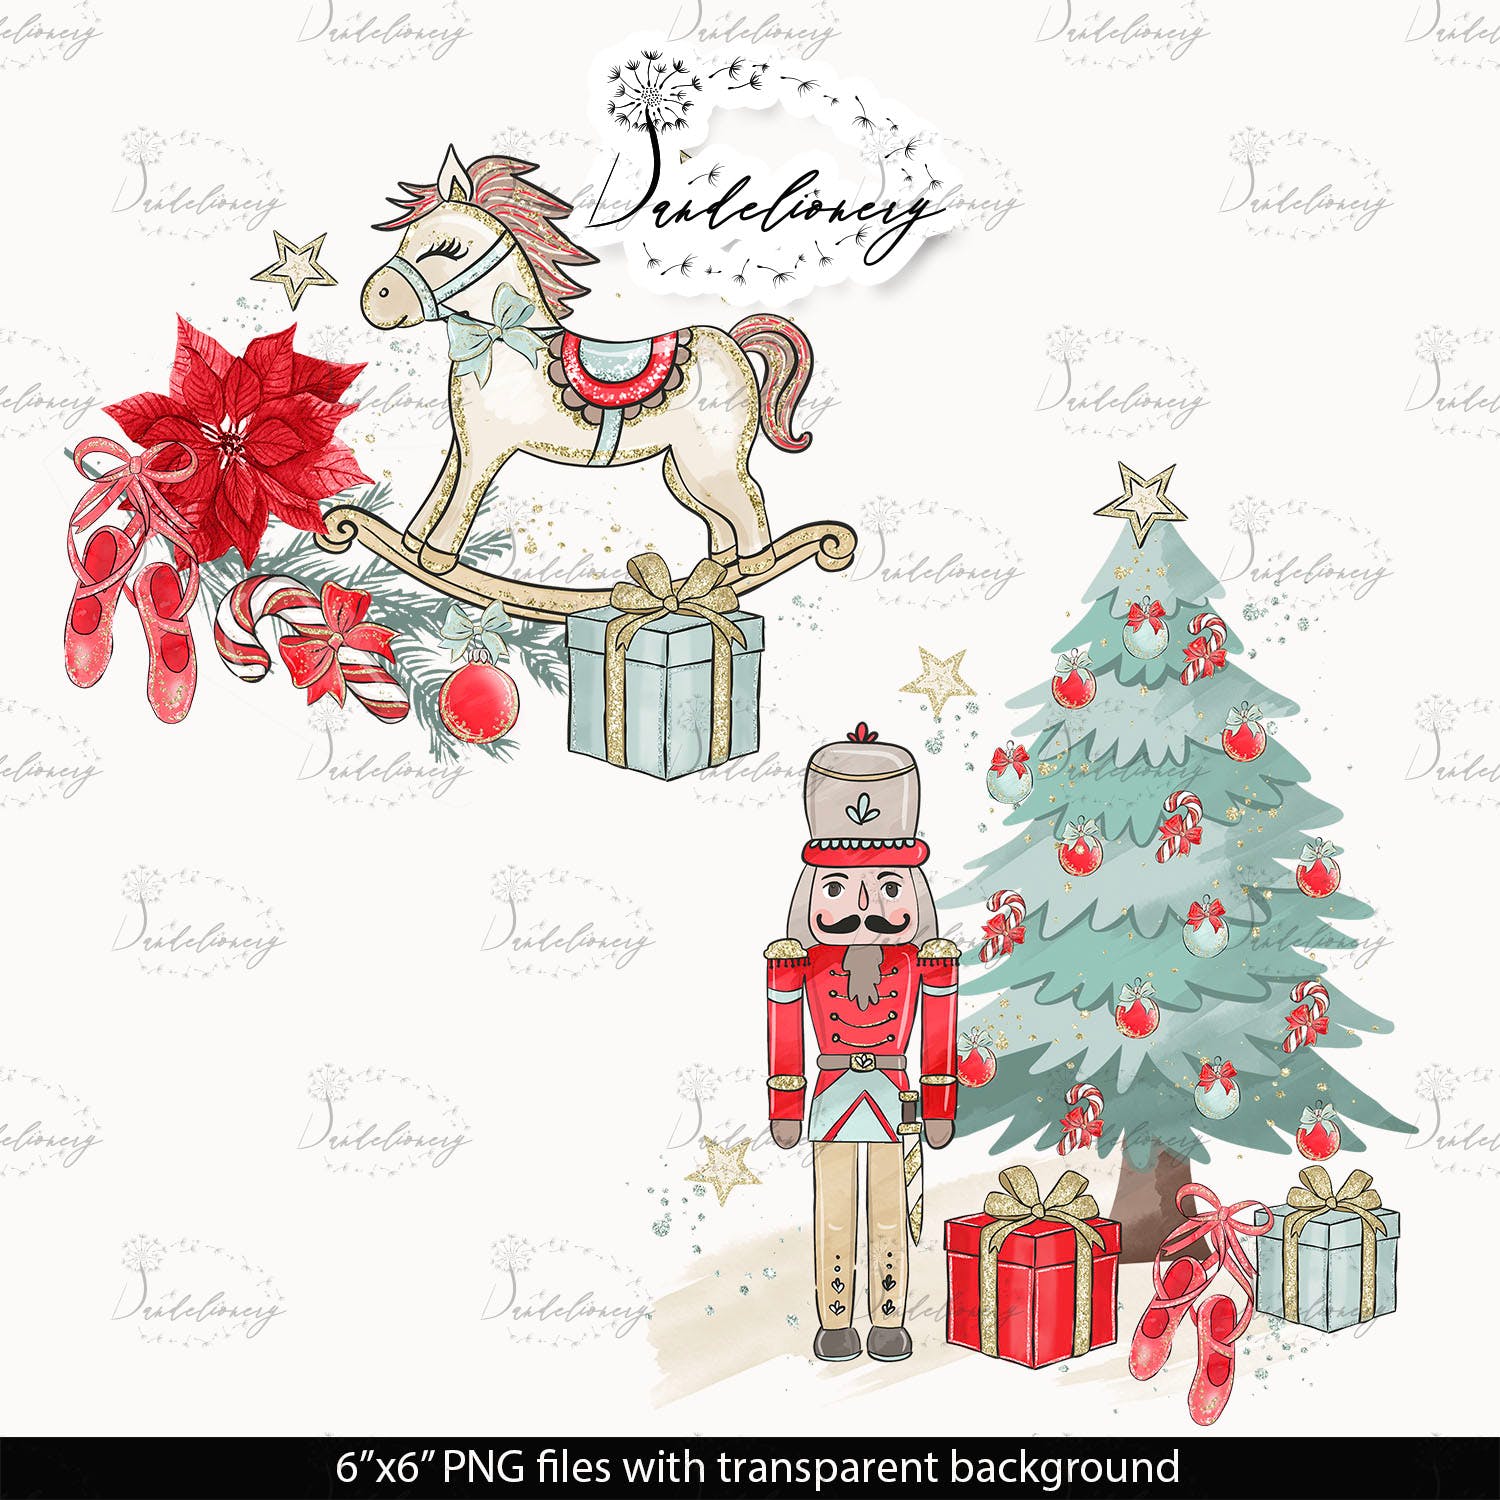 圣诞节胡桃夹子矢量手绘设计素材 Christmas Nutcracker design插图(2)